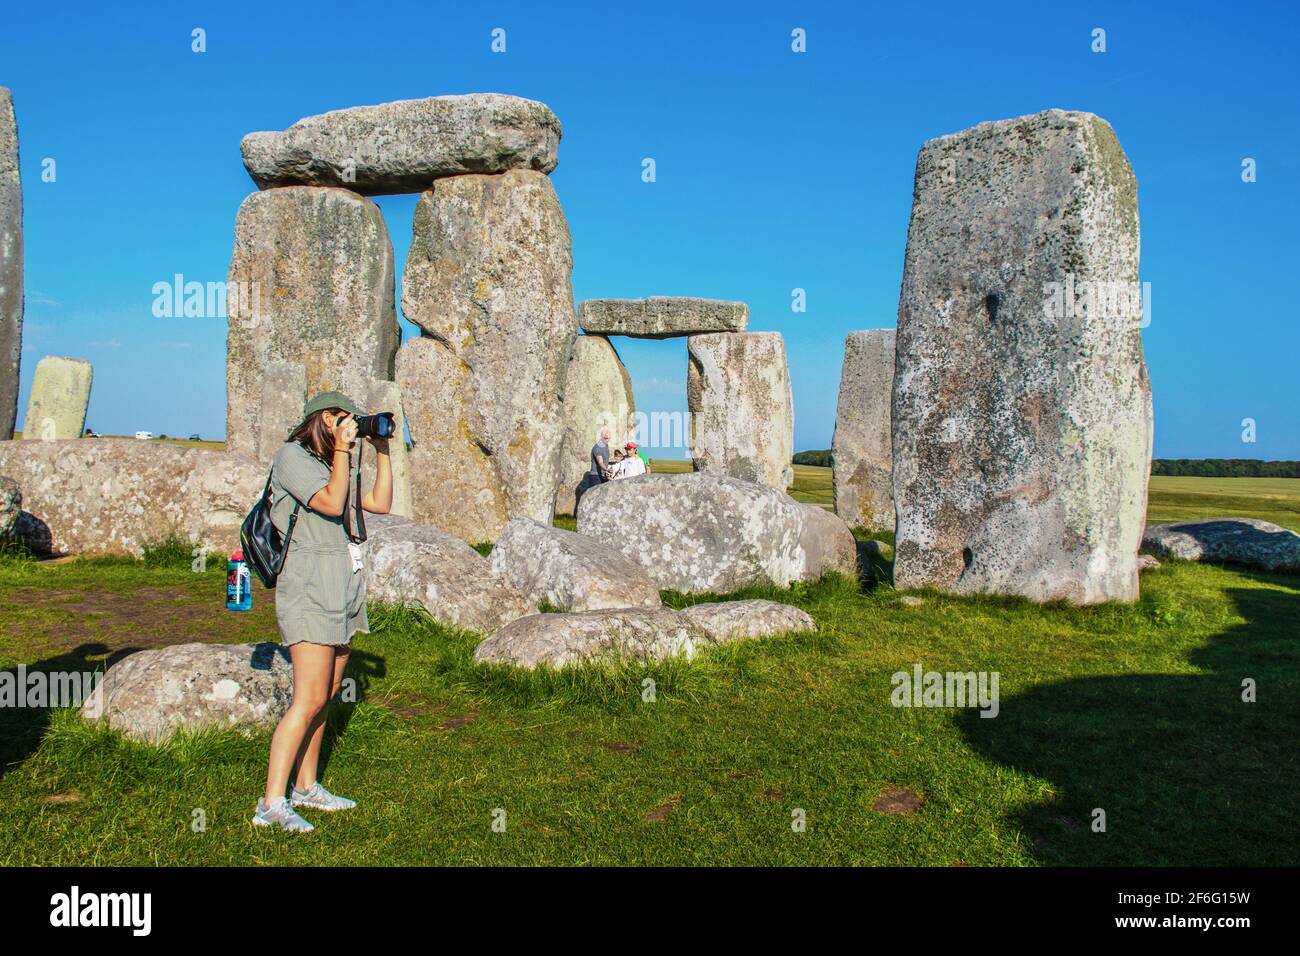 Juli 25 2019 Stonehenge UK Fotografin in Shorts nimmt Ein Bild in den stehenden Steinen in Stonehenge während des Vaters Nimmt Selfie mit dem Telefon auf Stockfoto